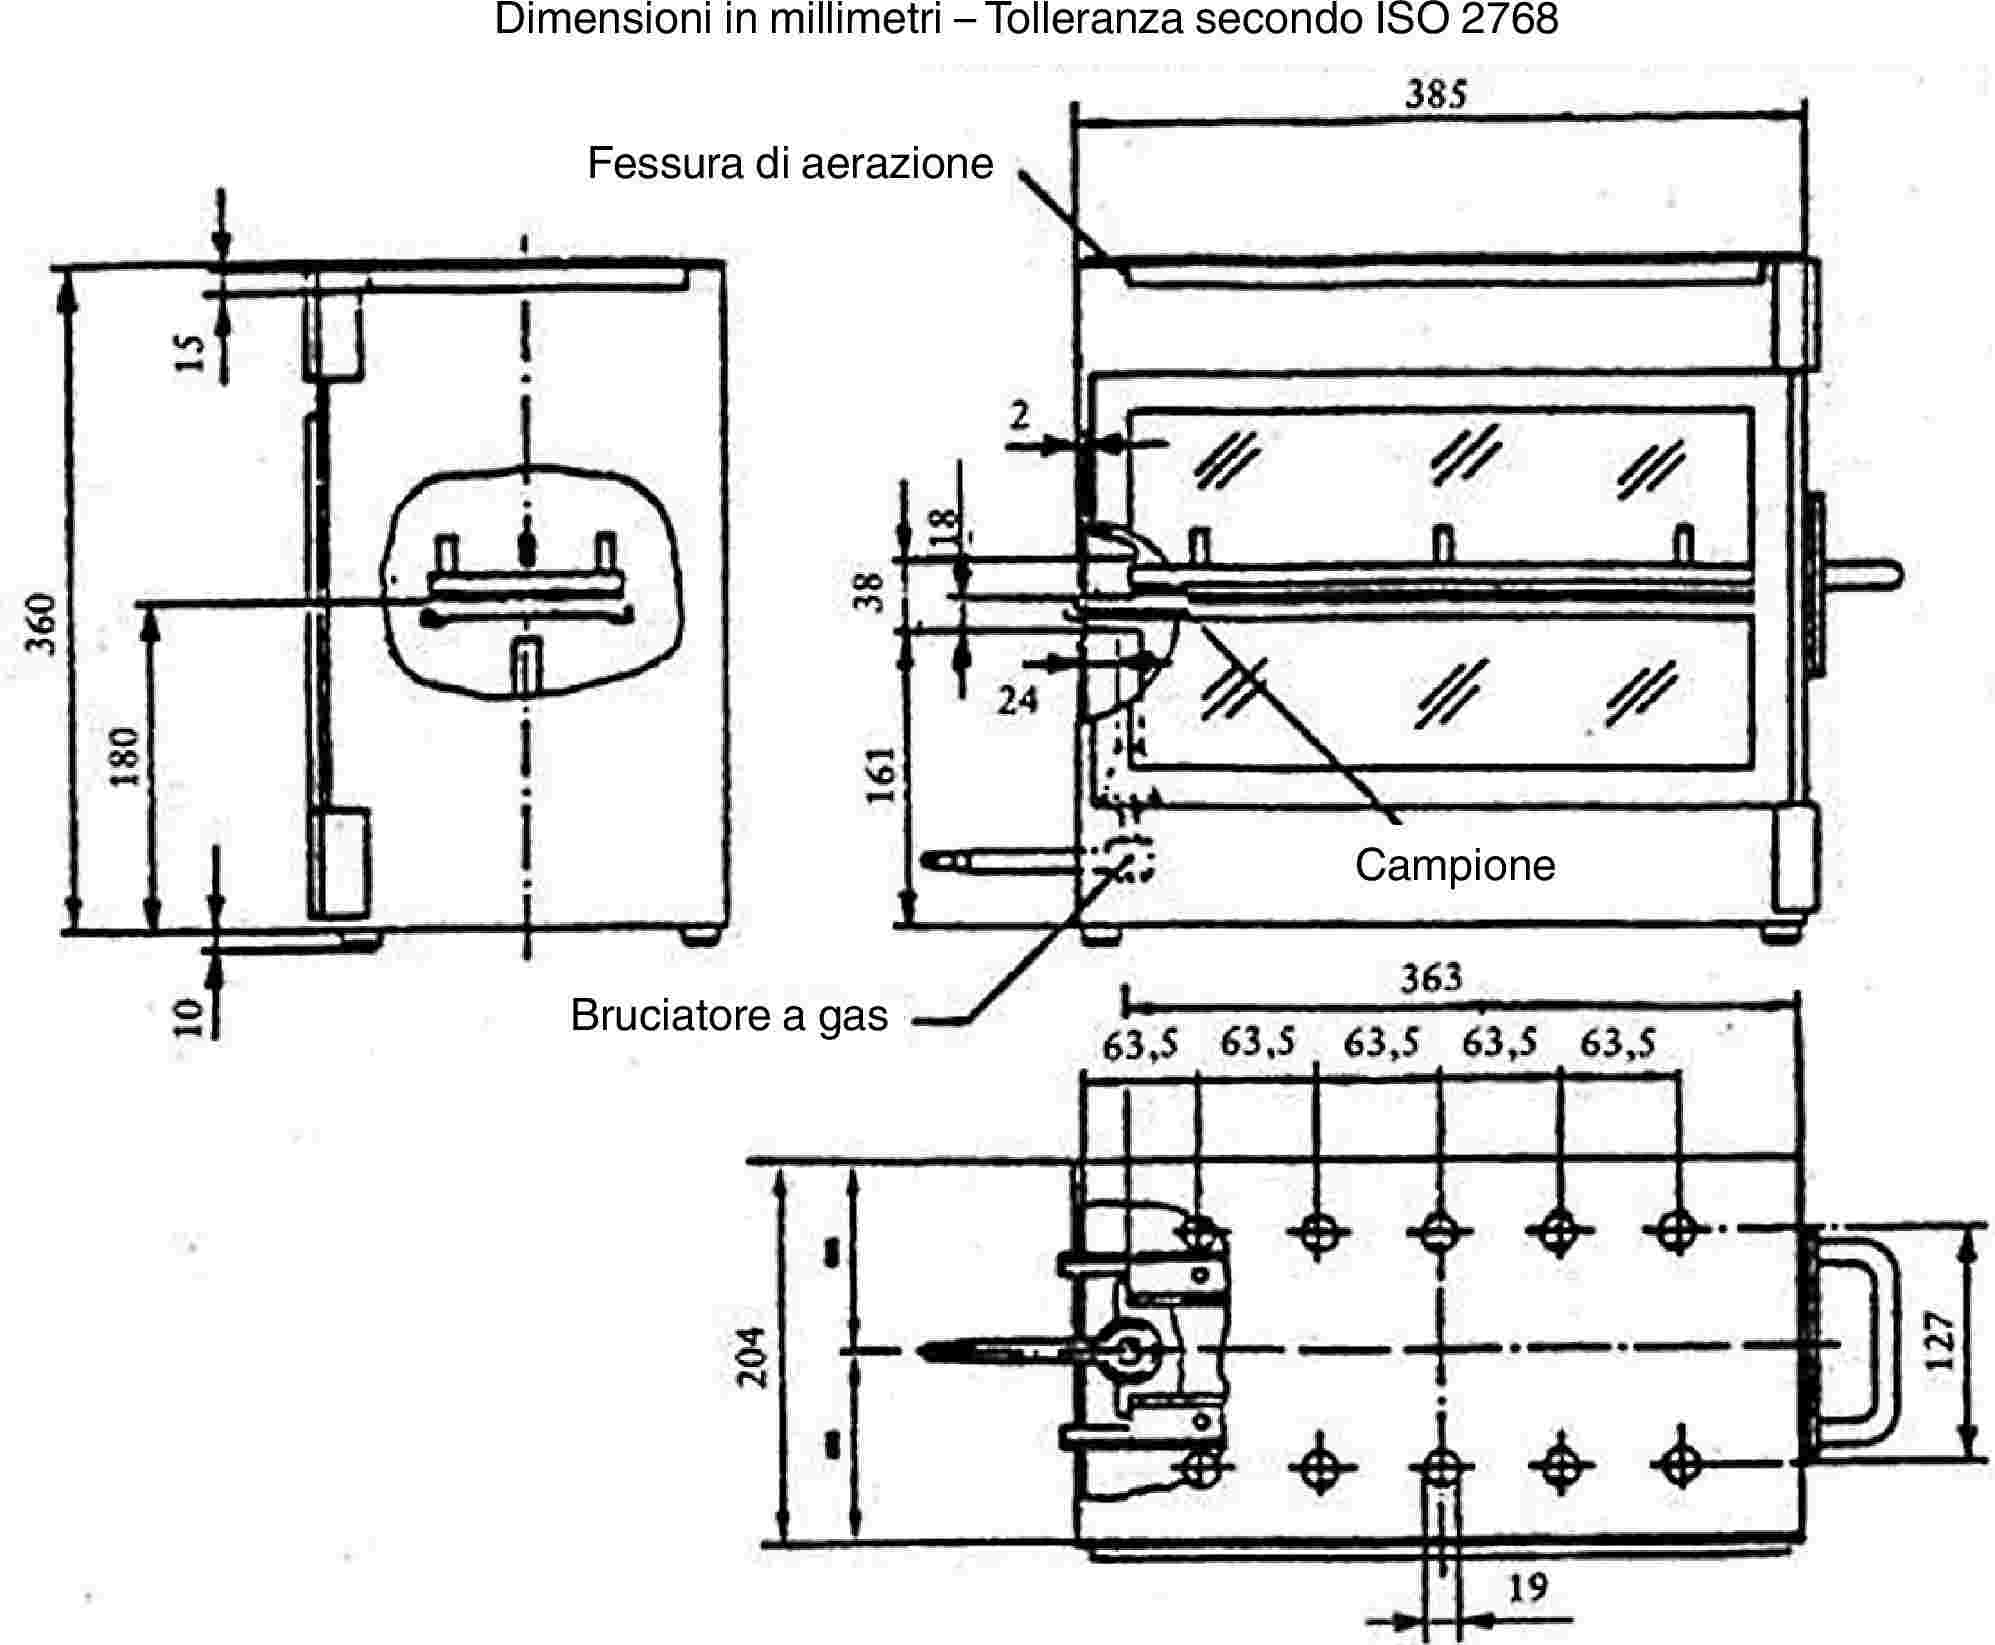 Dimensioni in millimetri – Tolleranza secondo ISO 2768Fessura di aerazioneCampioneBruciatore a gas